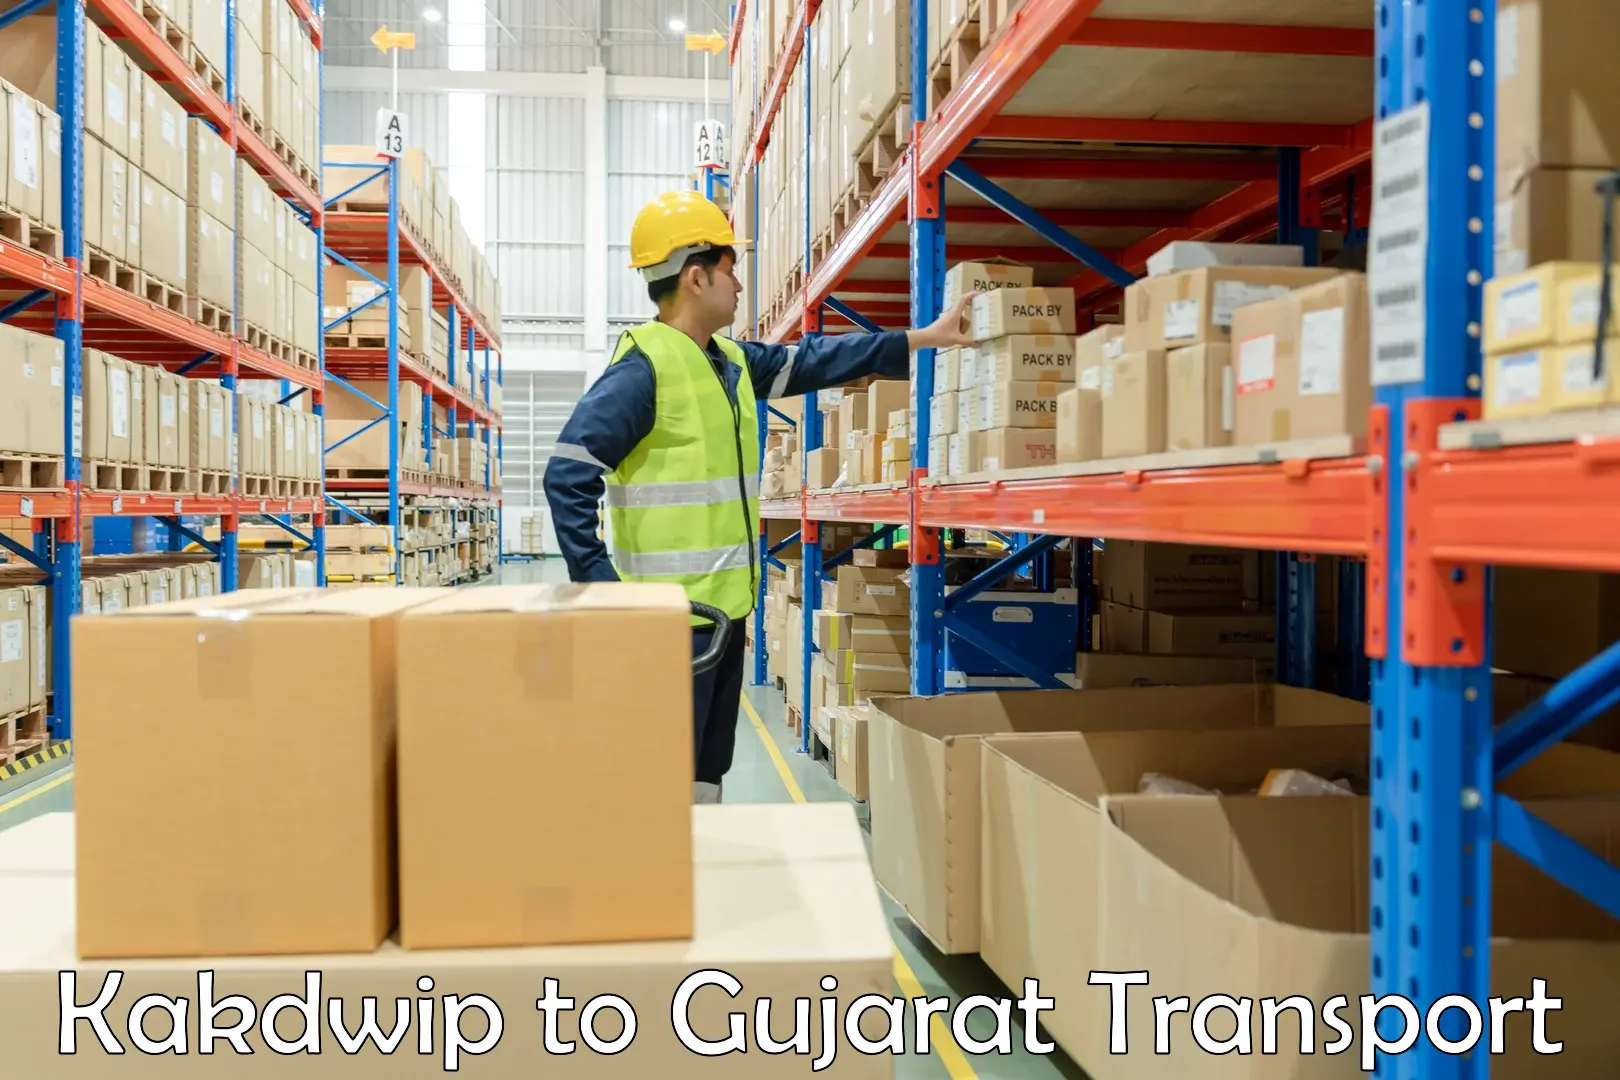 Online transport booking Kakdwip to Gujarat